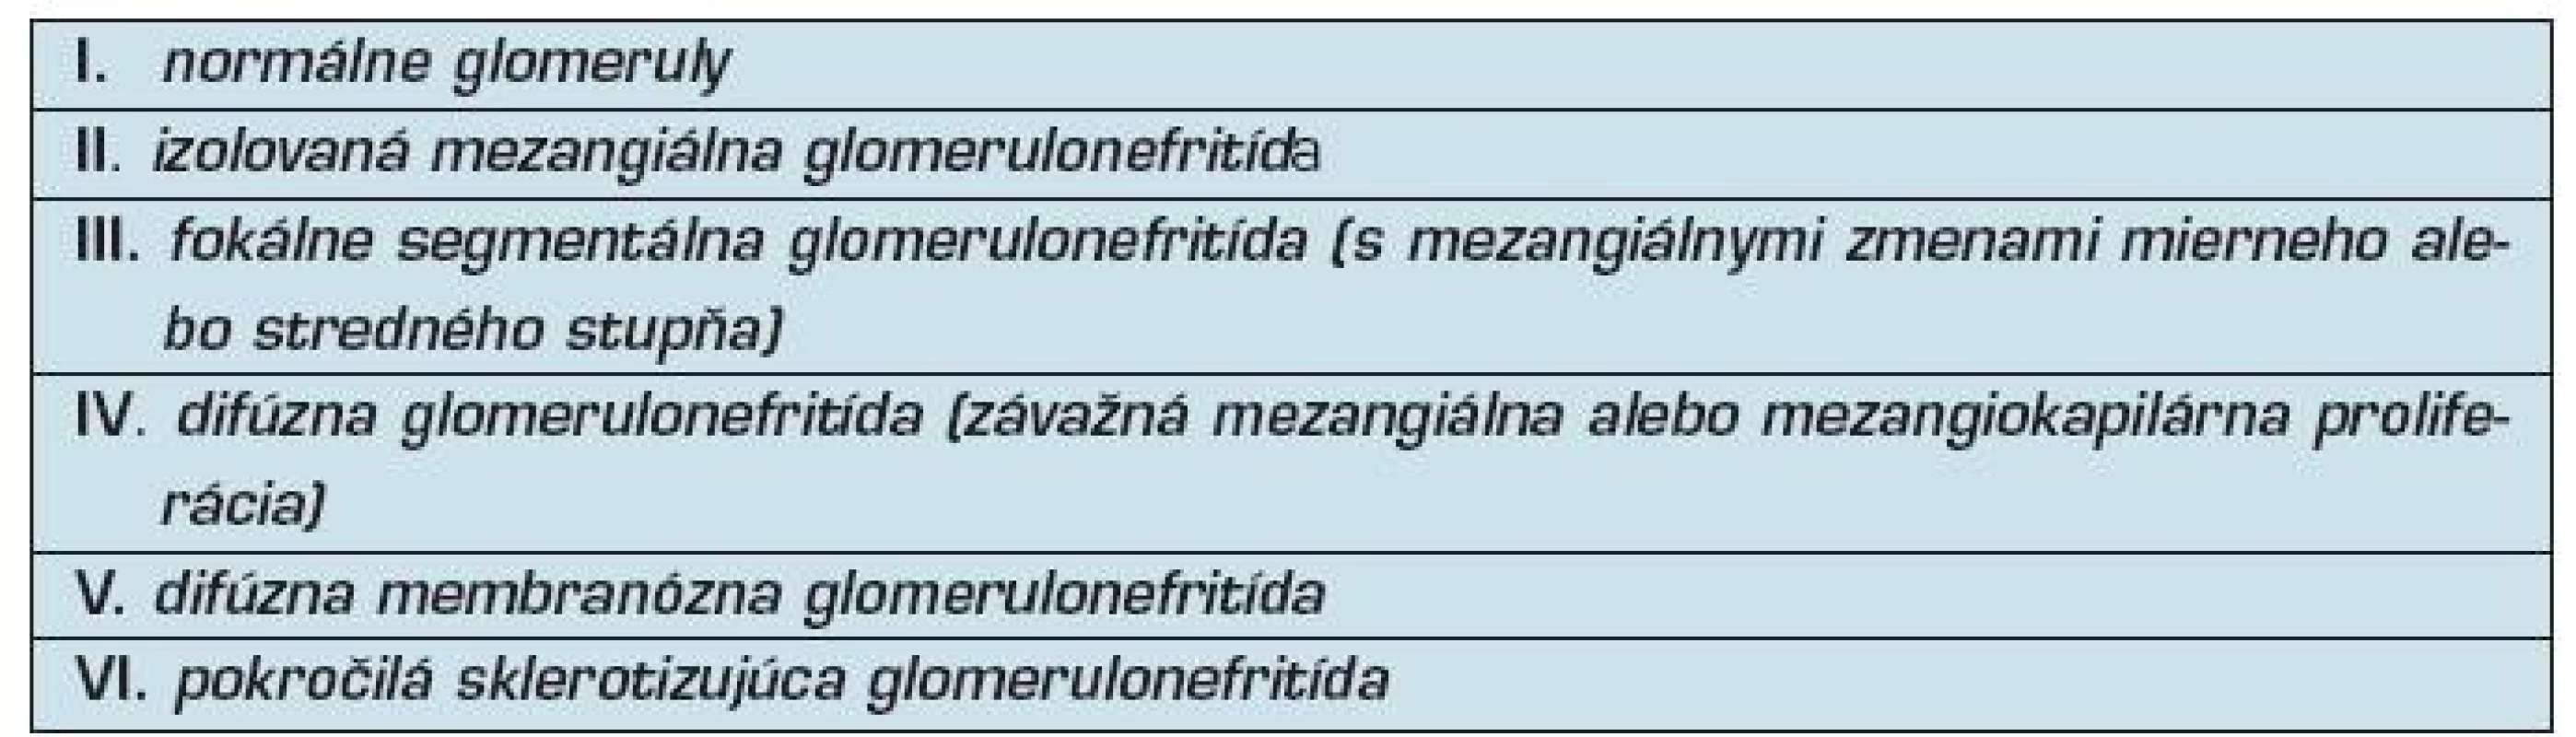 Klasifikácia lupusovej nefritídy podľa komisie WHO